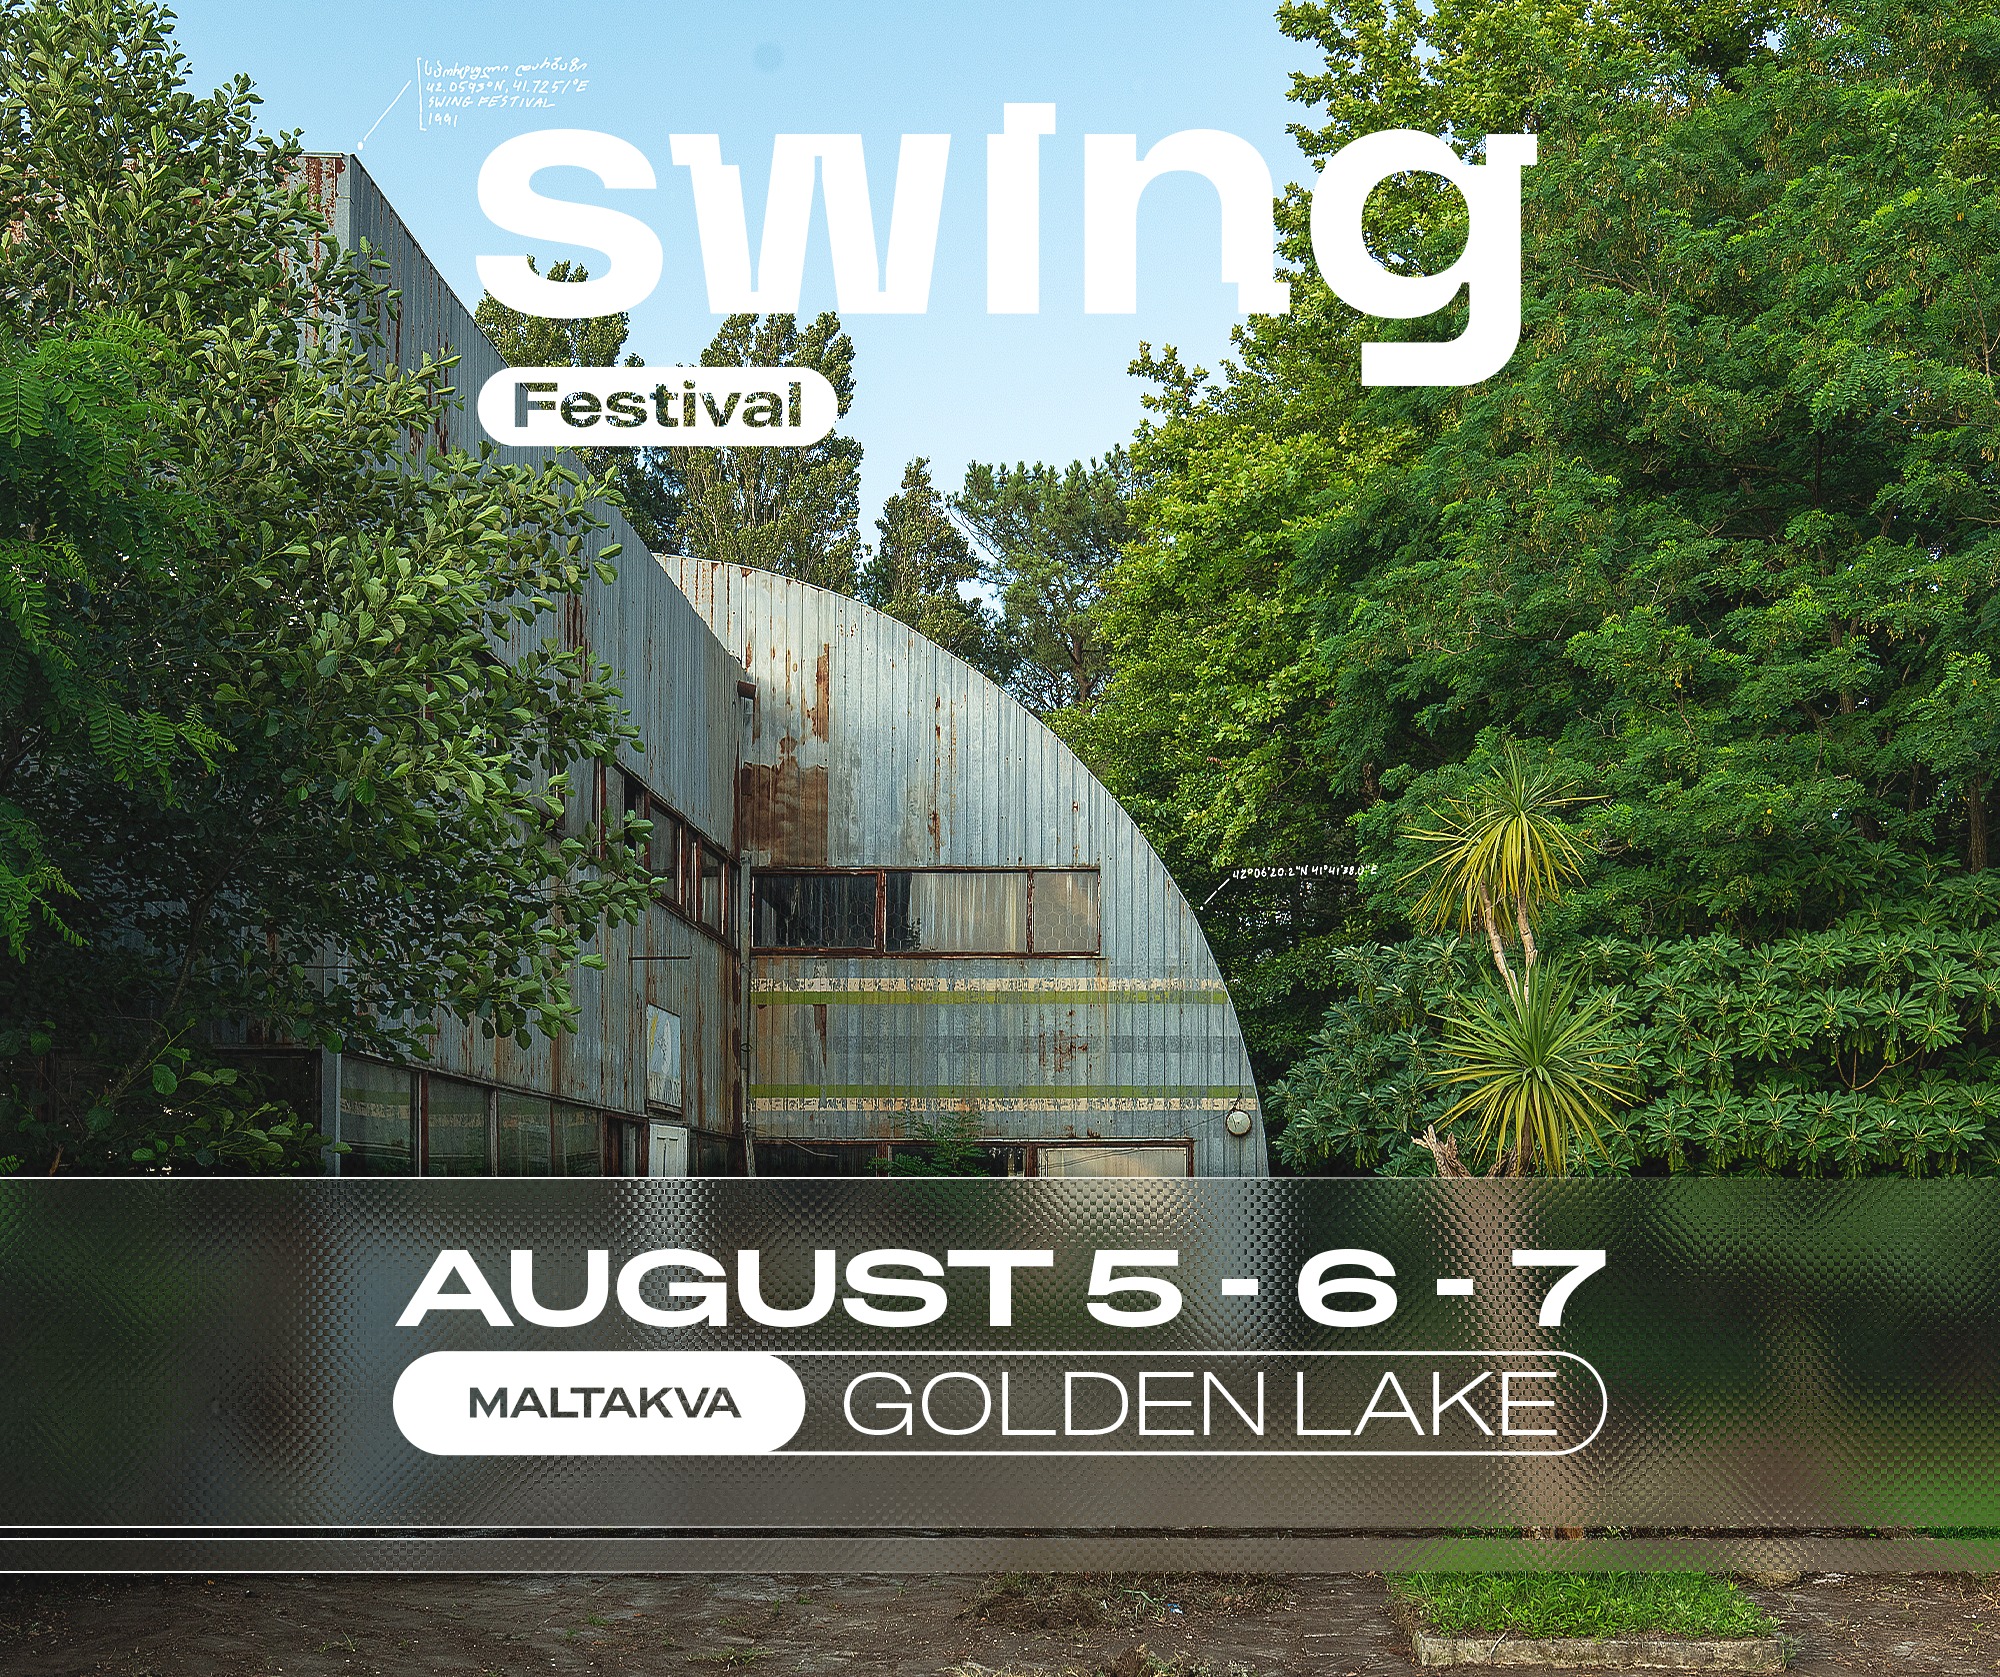 5 najlepszych butikowych festiwali w Europie, które trzeba zobaczyć, Swing Festival